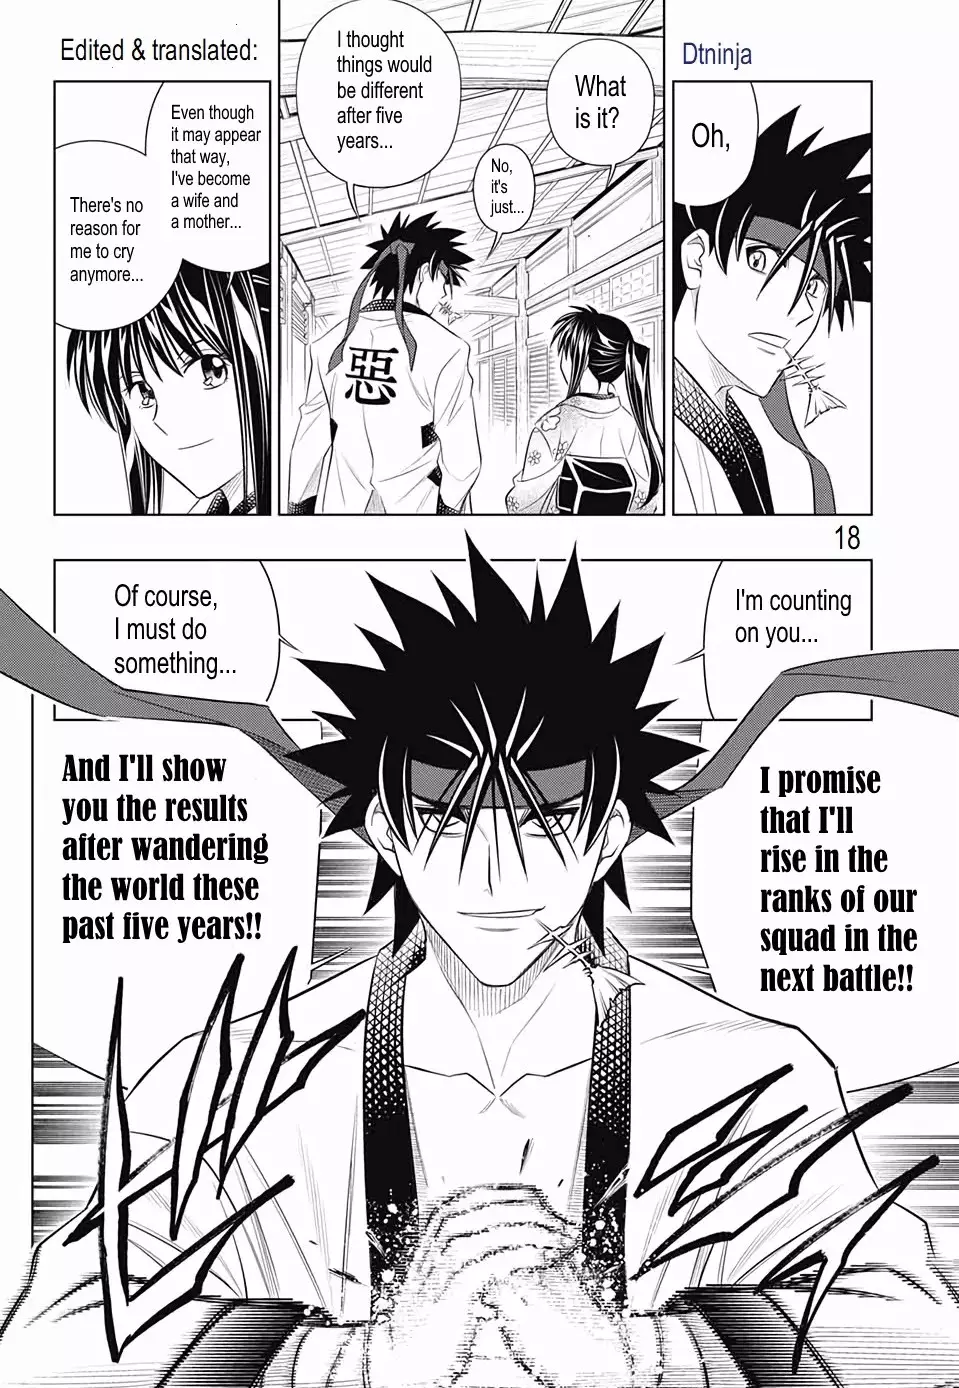 Rurouni Kenshin: Hokkaido Arc - 21 page 17